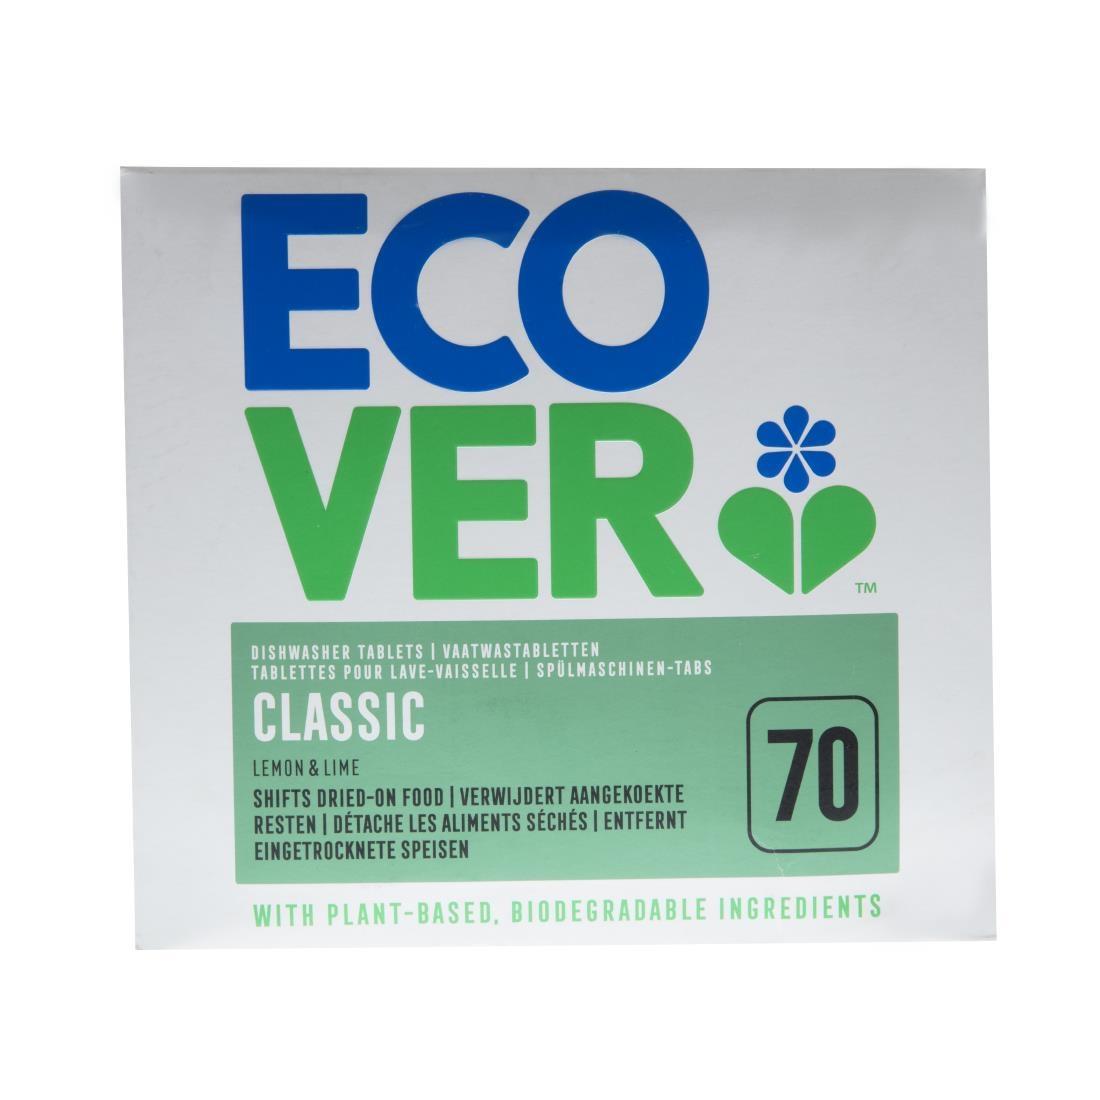 Ecover Dishwasher Detergent Tablets (70 Pack) - GG200  - 6